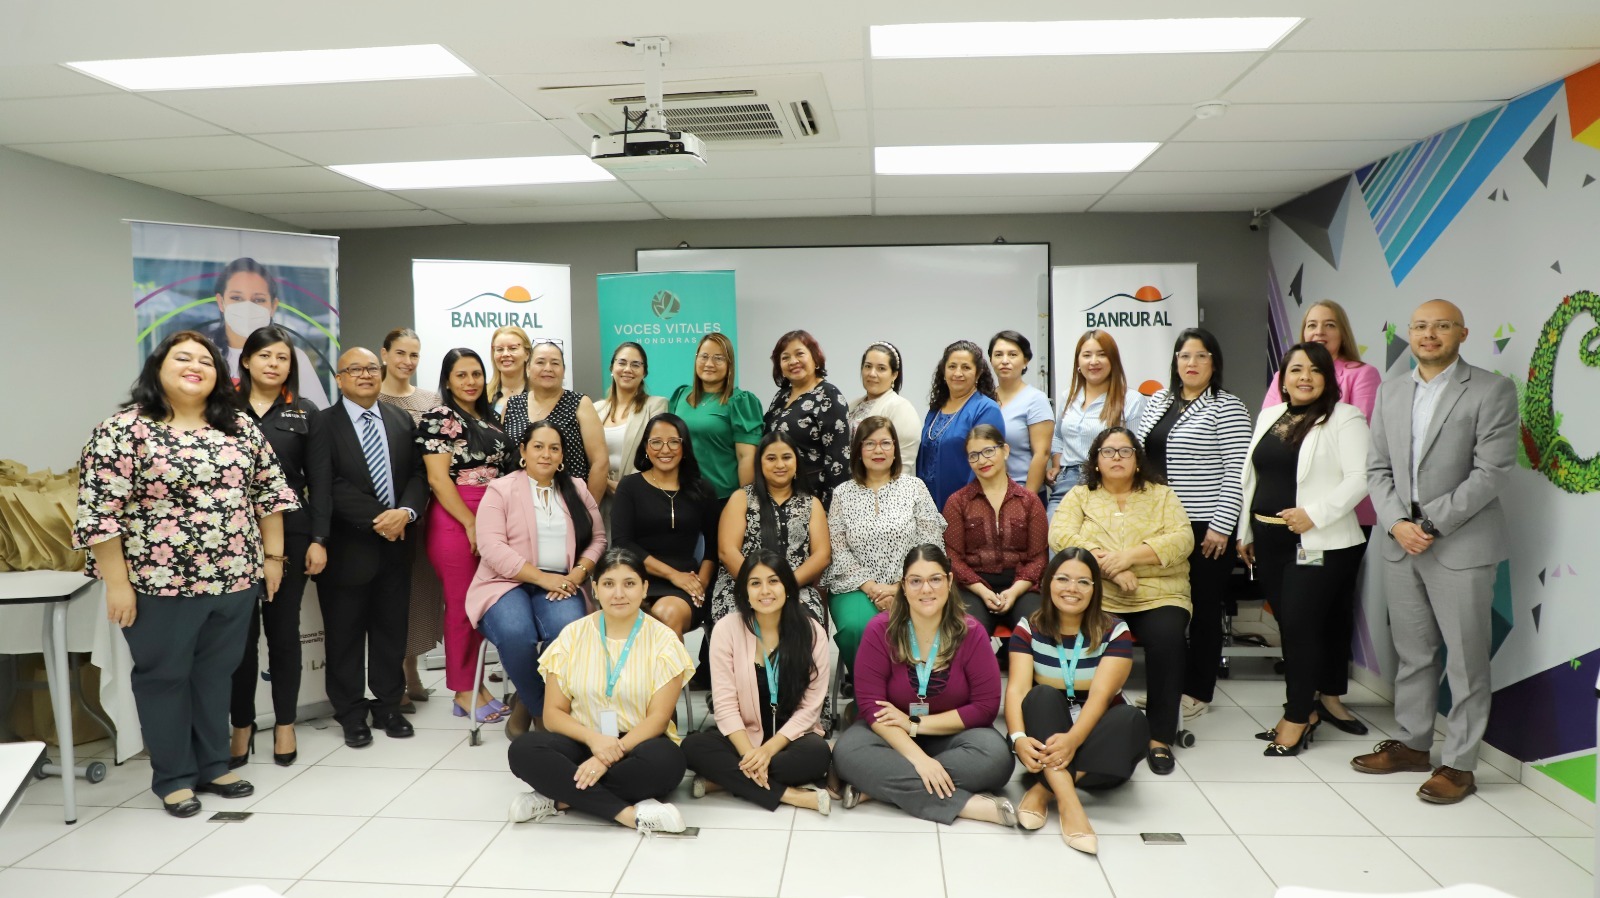 Banrural da inicio al programa “Fortaleciendo Empresarias en Cadenas Productivas” en colaboración con Voces Vitales Honduras para impulsar el empoderamiento de mujeres emprendedoras